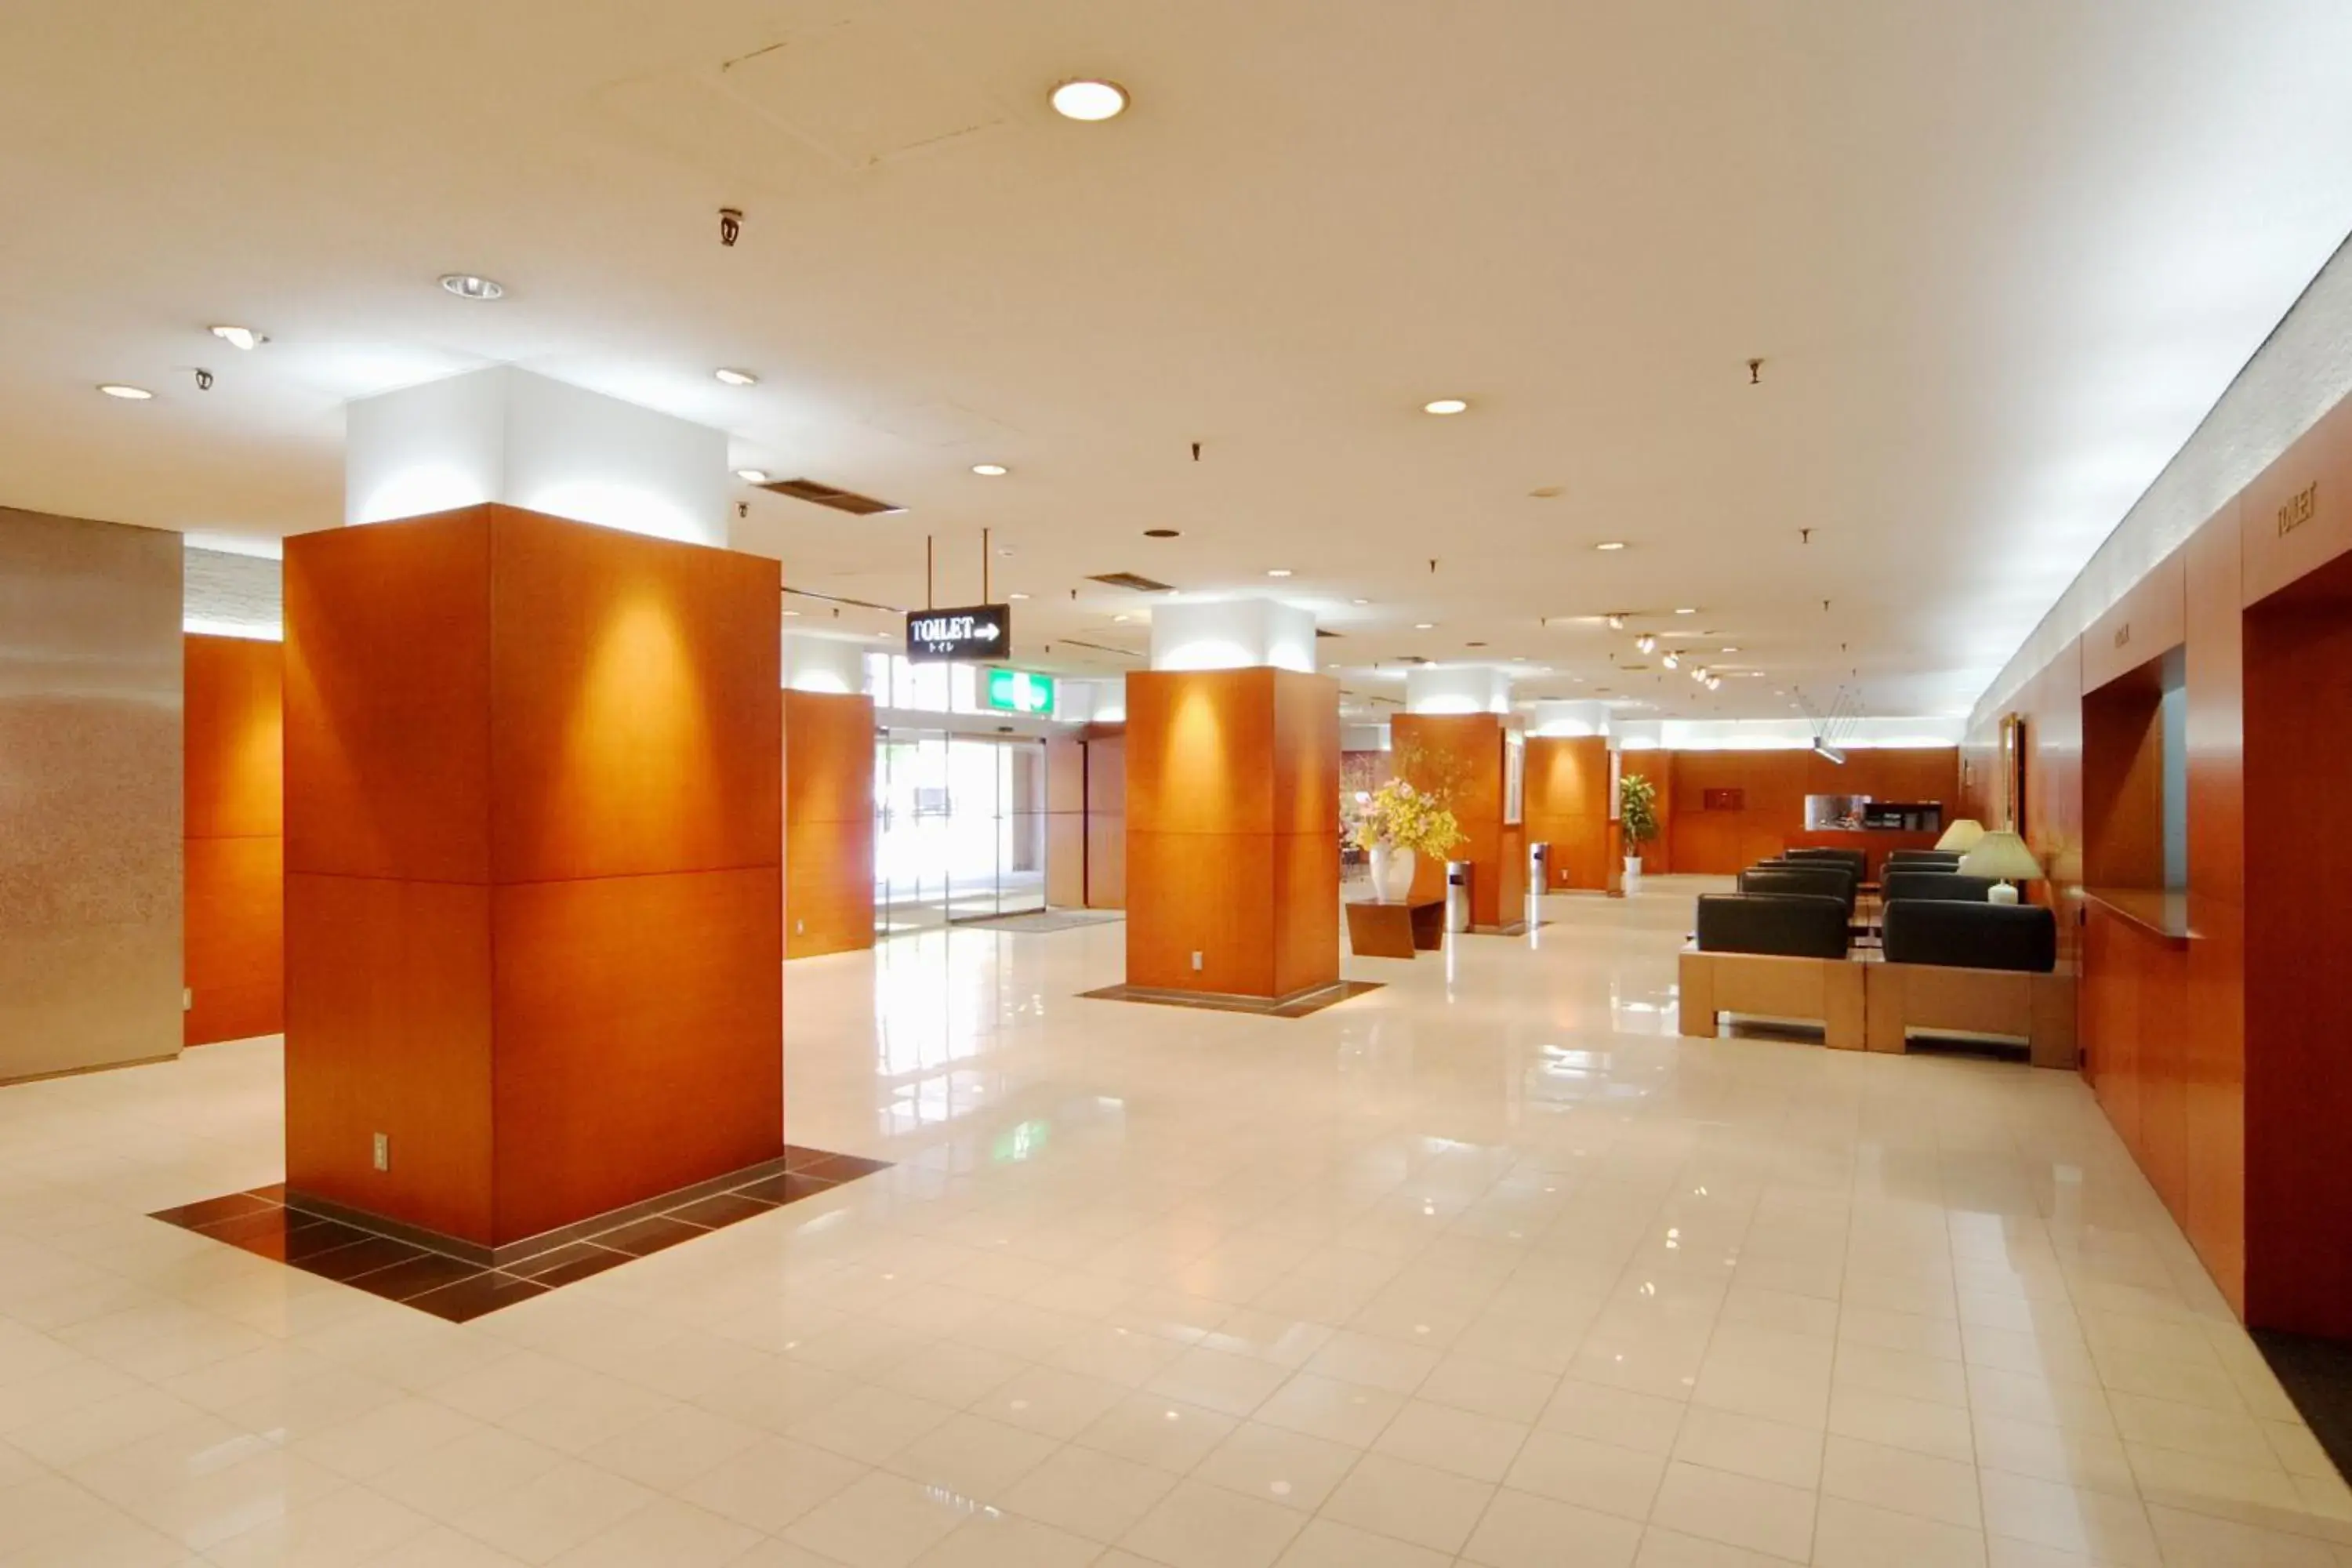 Lobby or reception, Lobby/Reception in Asahikawa Toyo Hotel